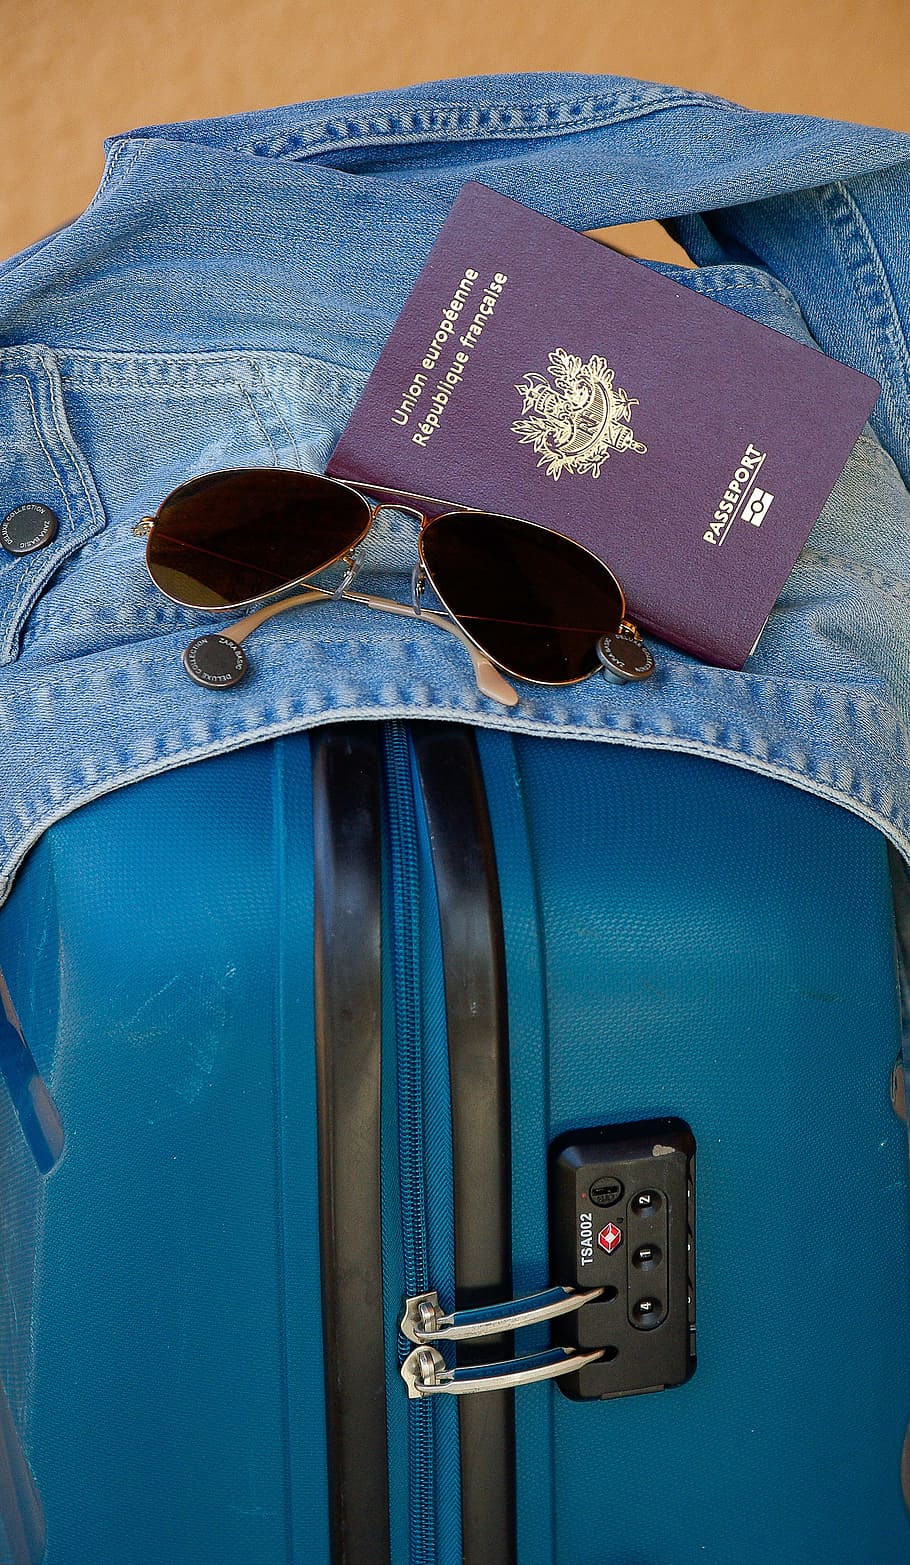 비행가 선글라스, 옆에, 여권 책, 데님 재킷, 여행 가방, 출발, 여행, 여권, 선글라스, 푸른